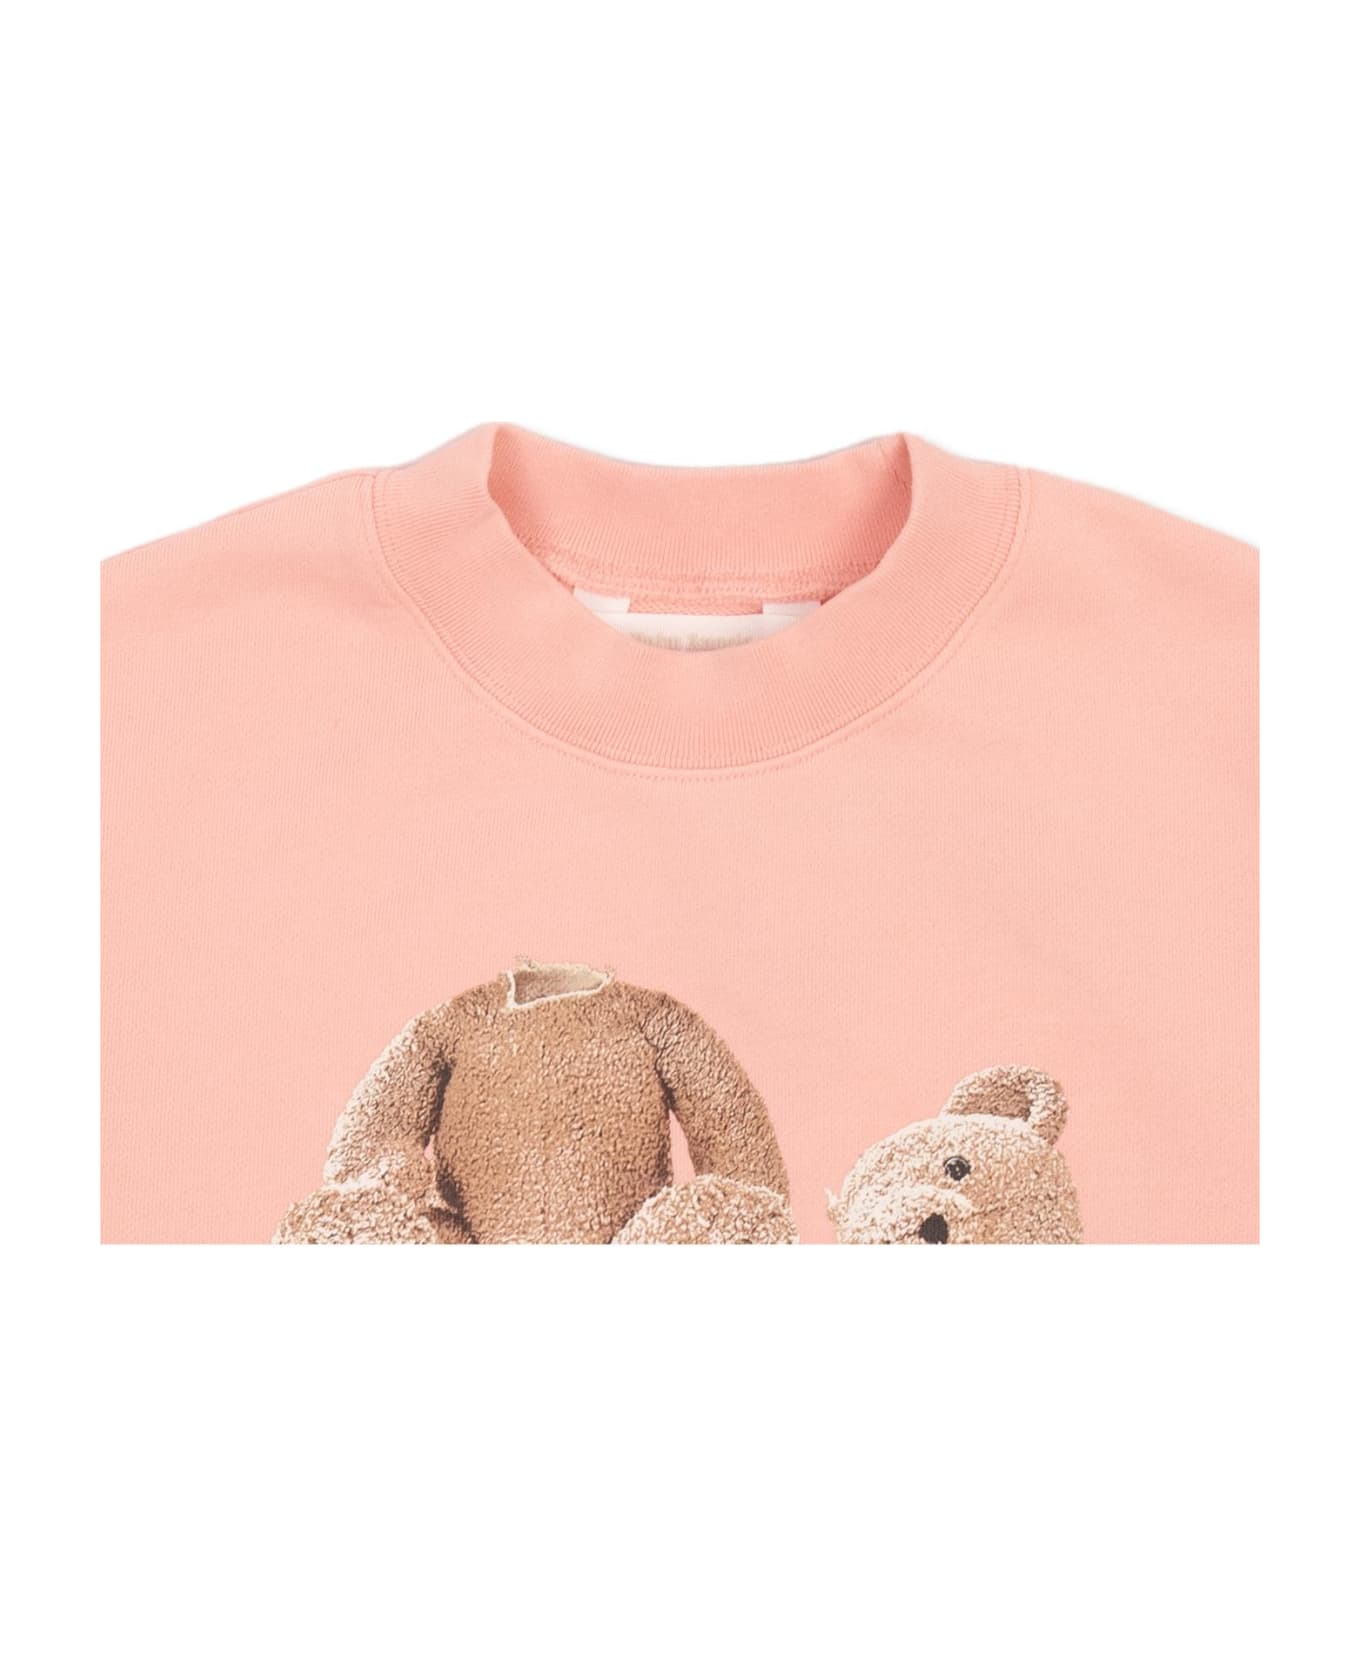 Palm Angels Kids Printed Sweatshirt - PINK